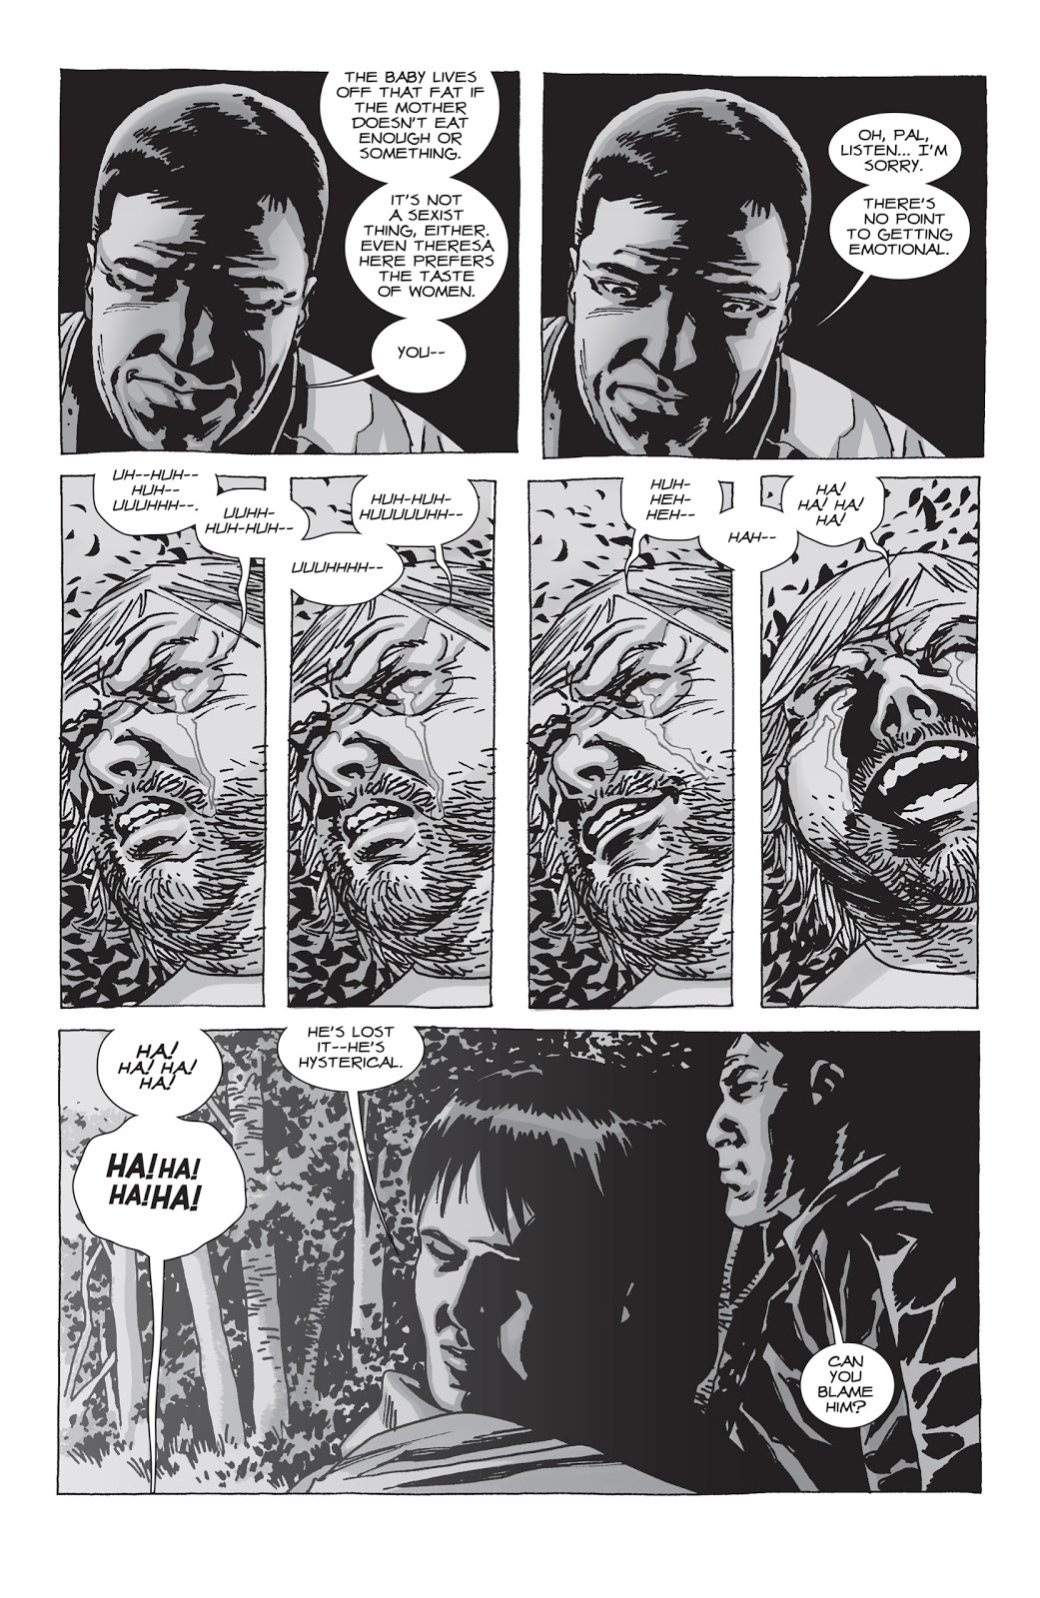 Галерея 10 наиболее значимых выпусков комикса «Ходячие мертвецы» - 3 фото